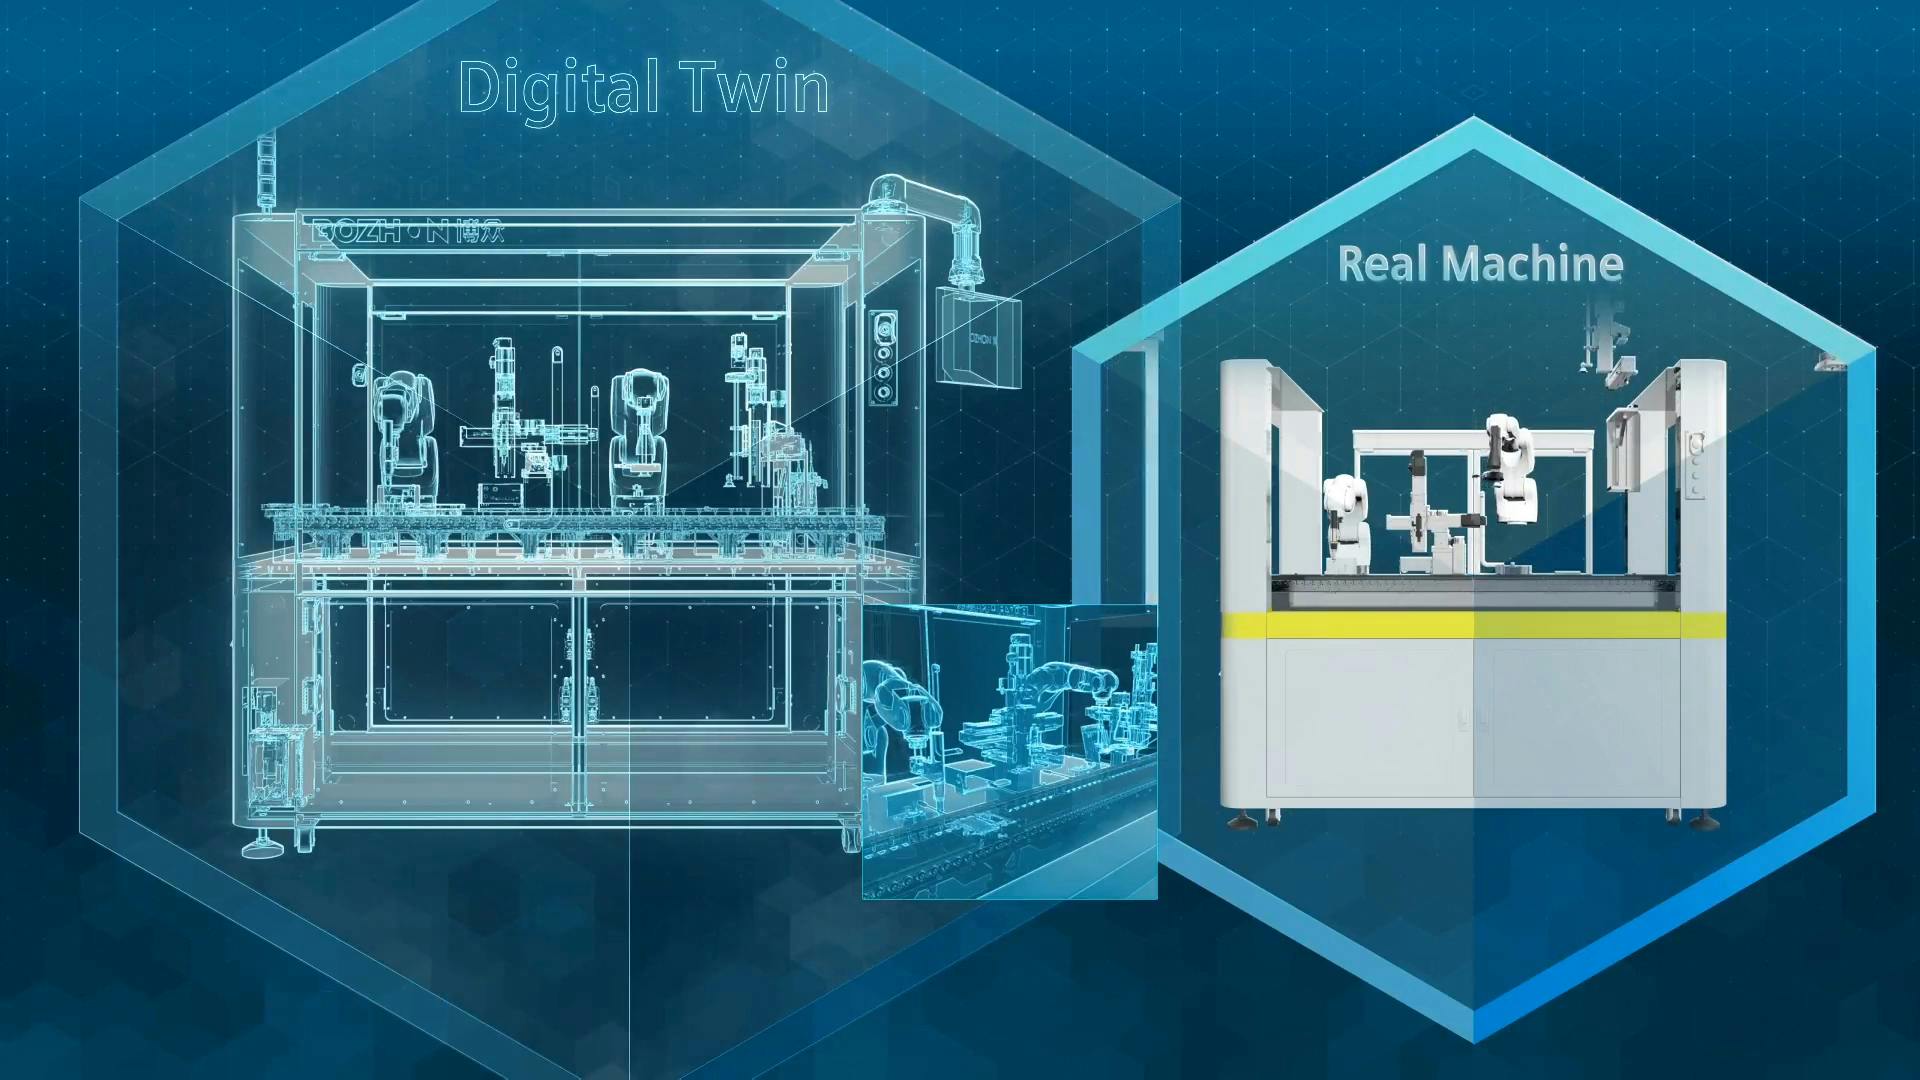 Del concepto a la realidad: El gemelo digital en fabricación